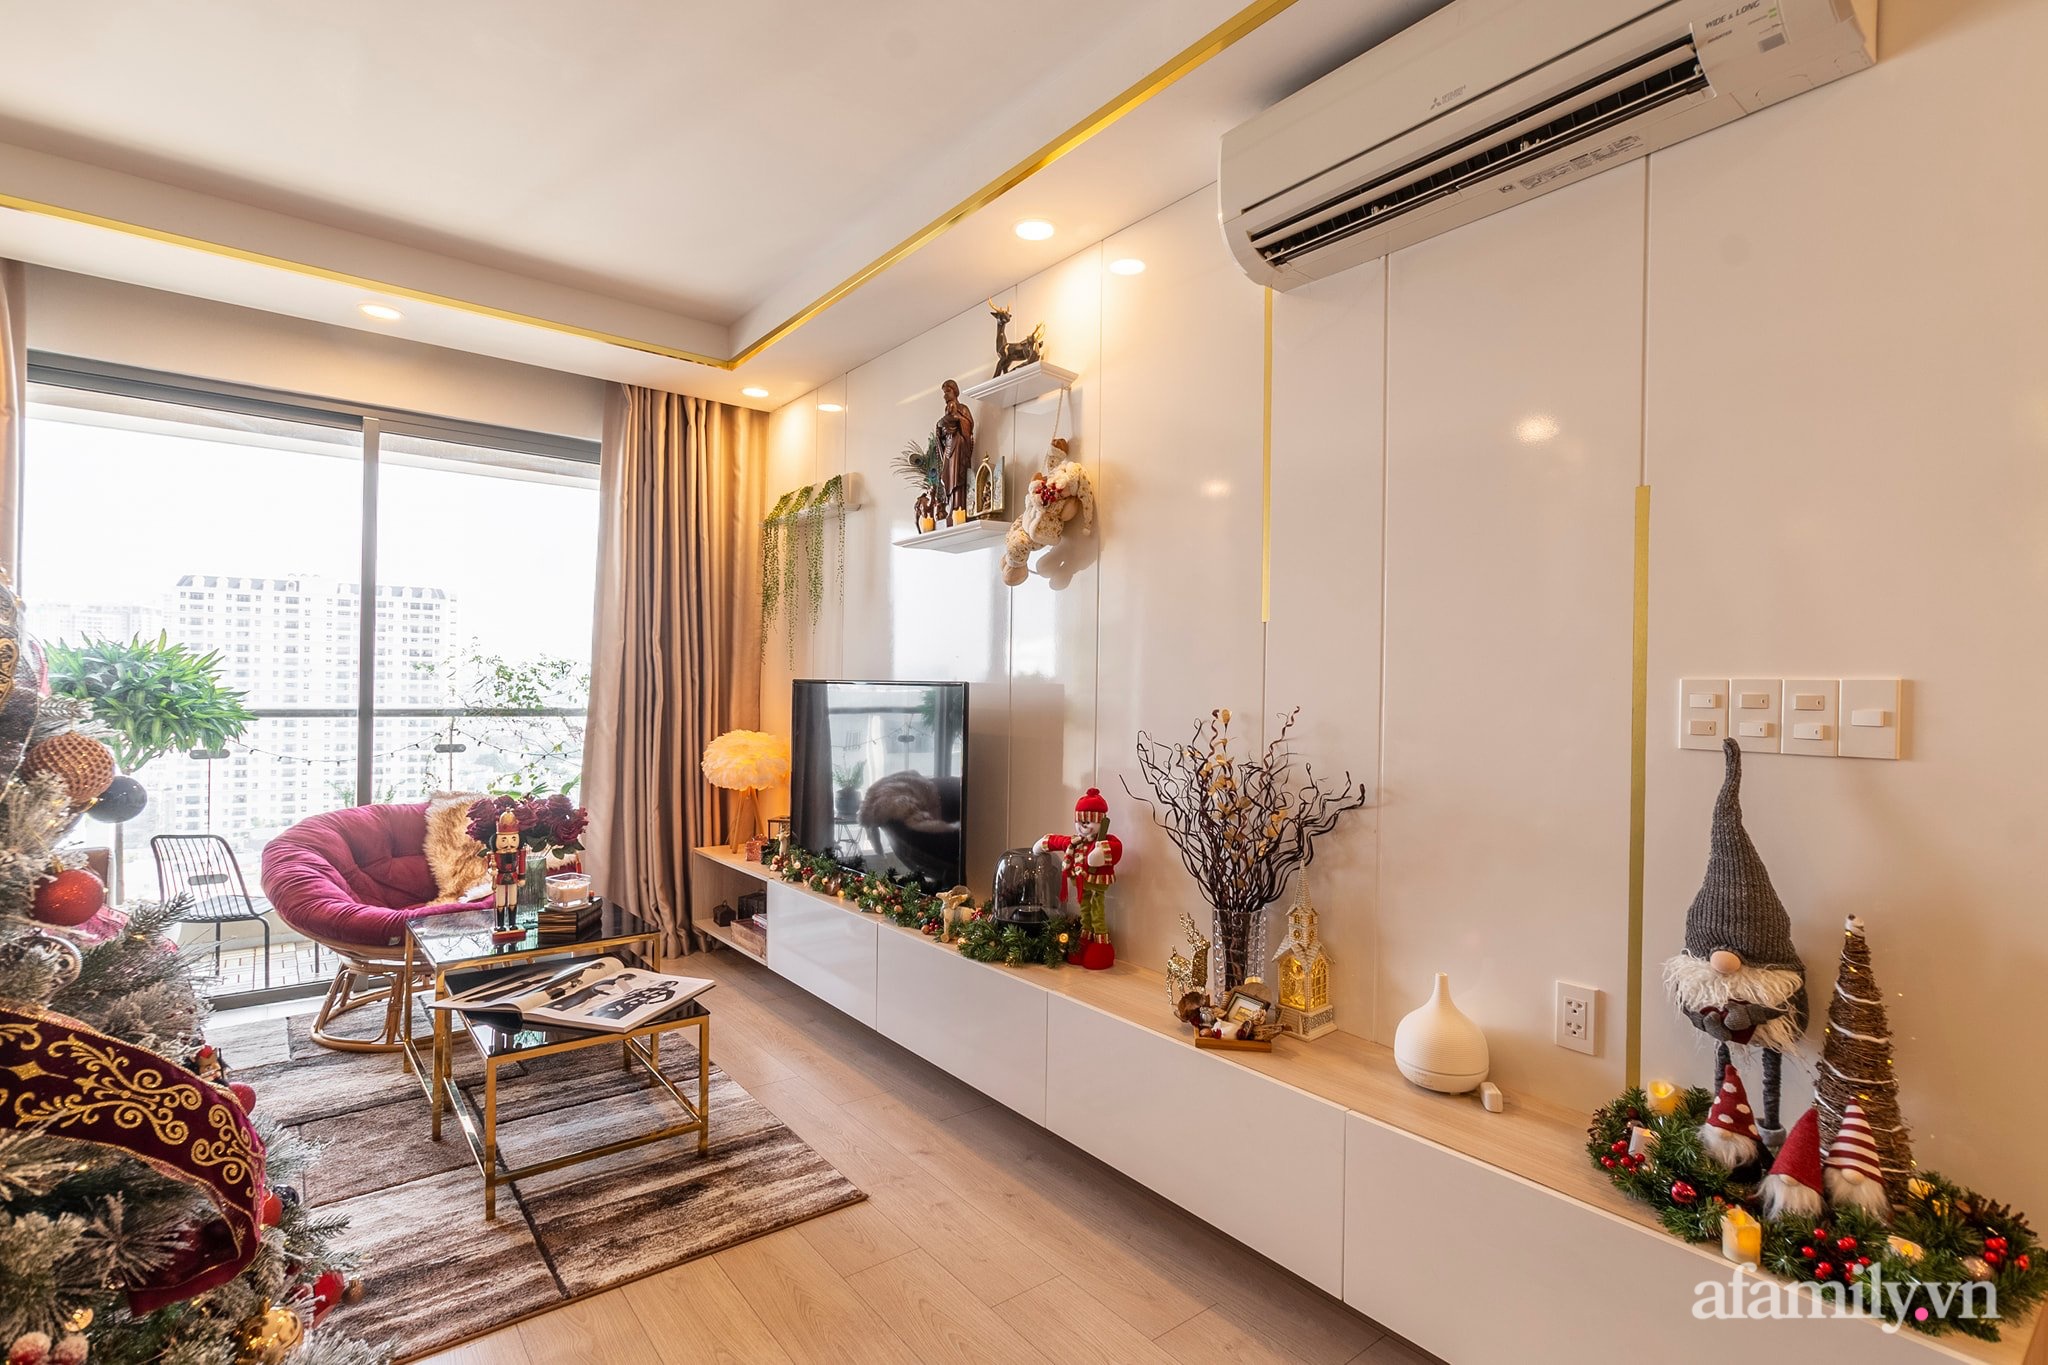 Chi 50 triệu đồng mua đồ trang trí, căn hộ Sài Gòn đẹp lịm tim đón Giáng sinh đang về - Ảnh 17.